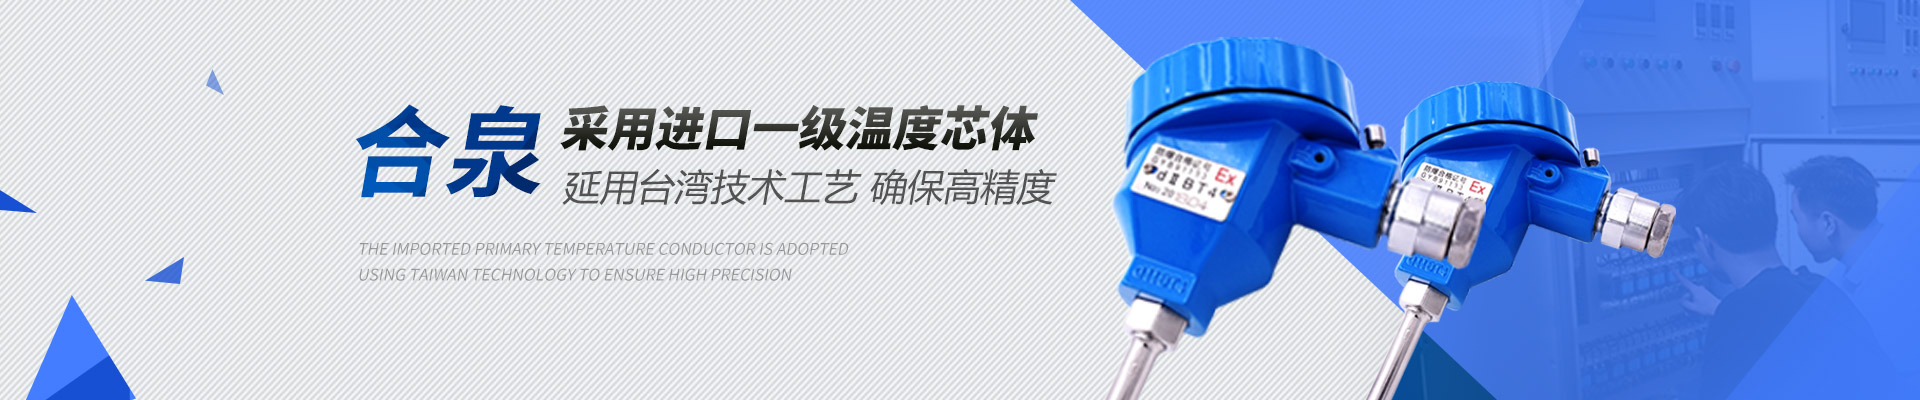 合泉Twidec温度传感器沿用台湾技术工艺